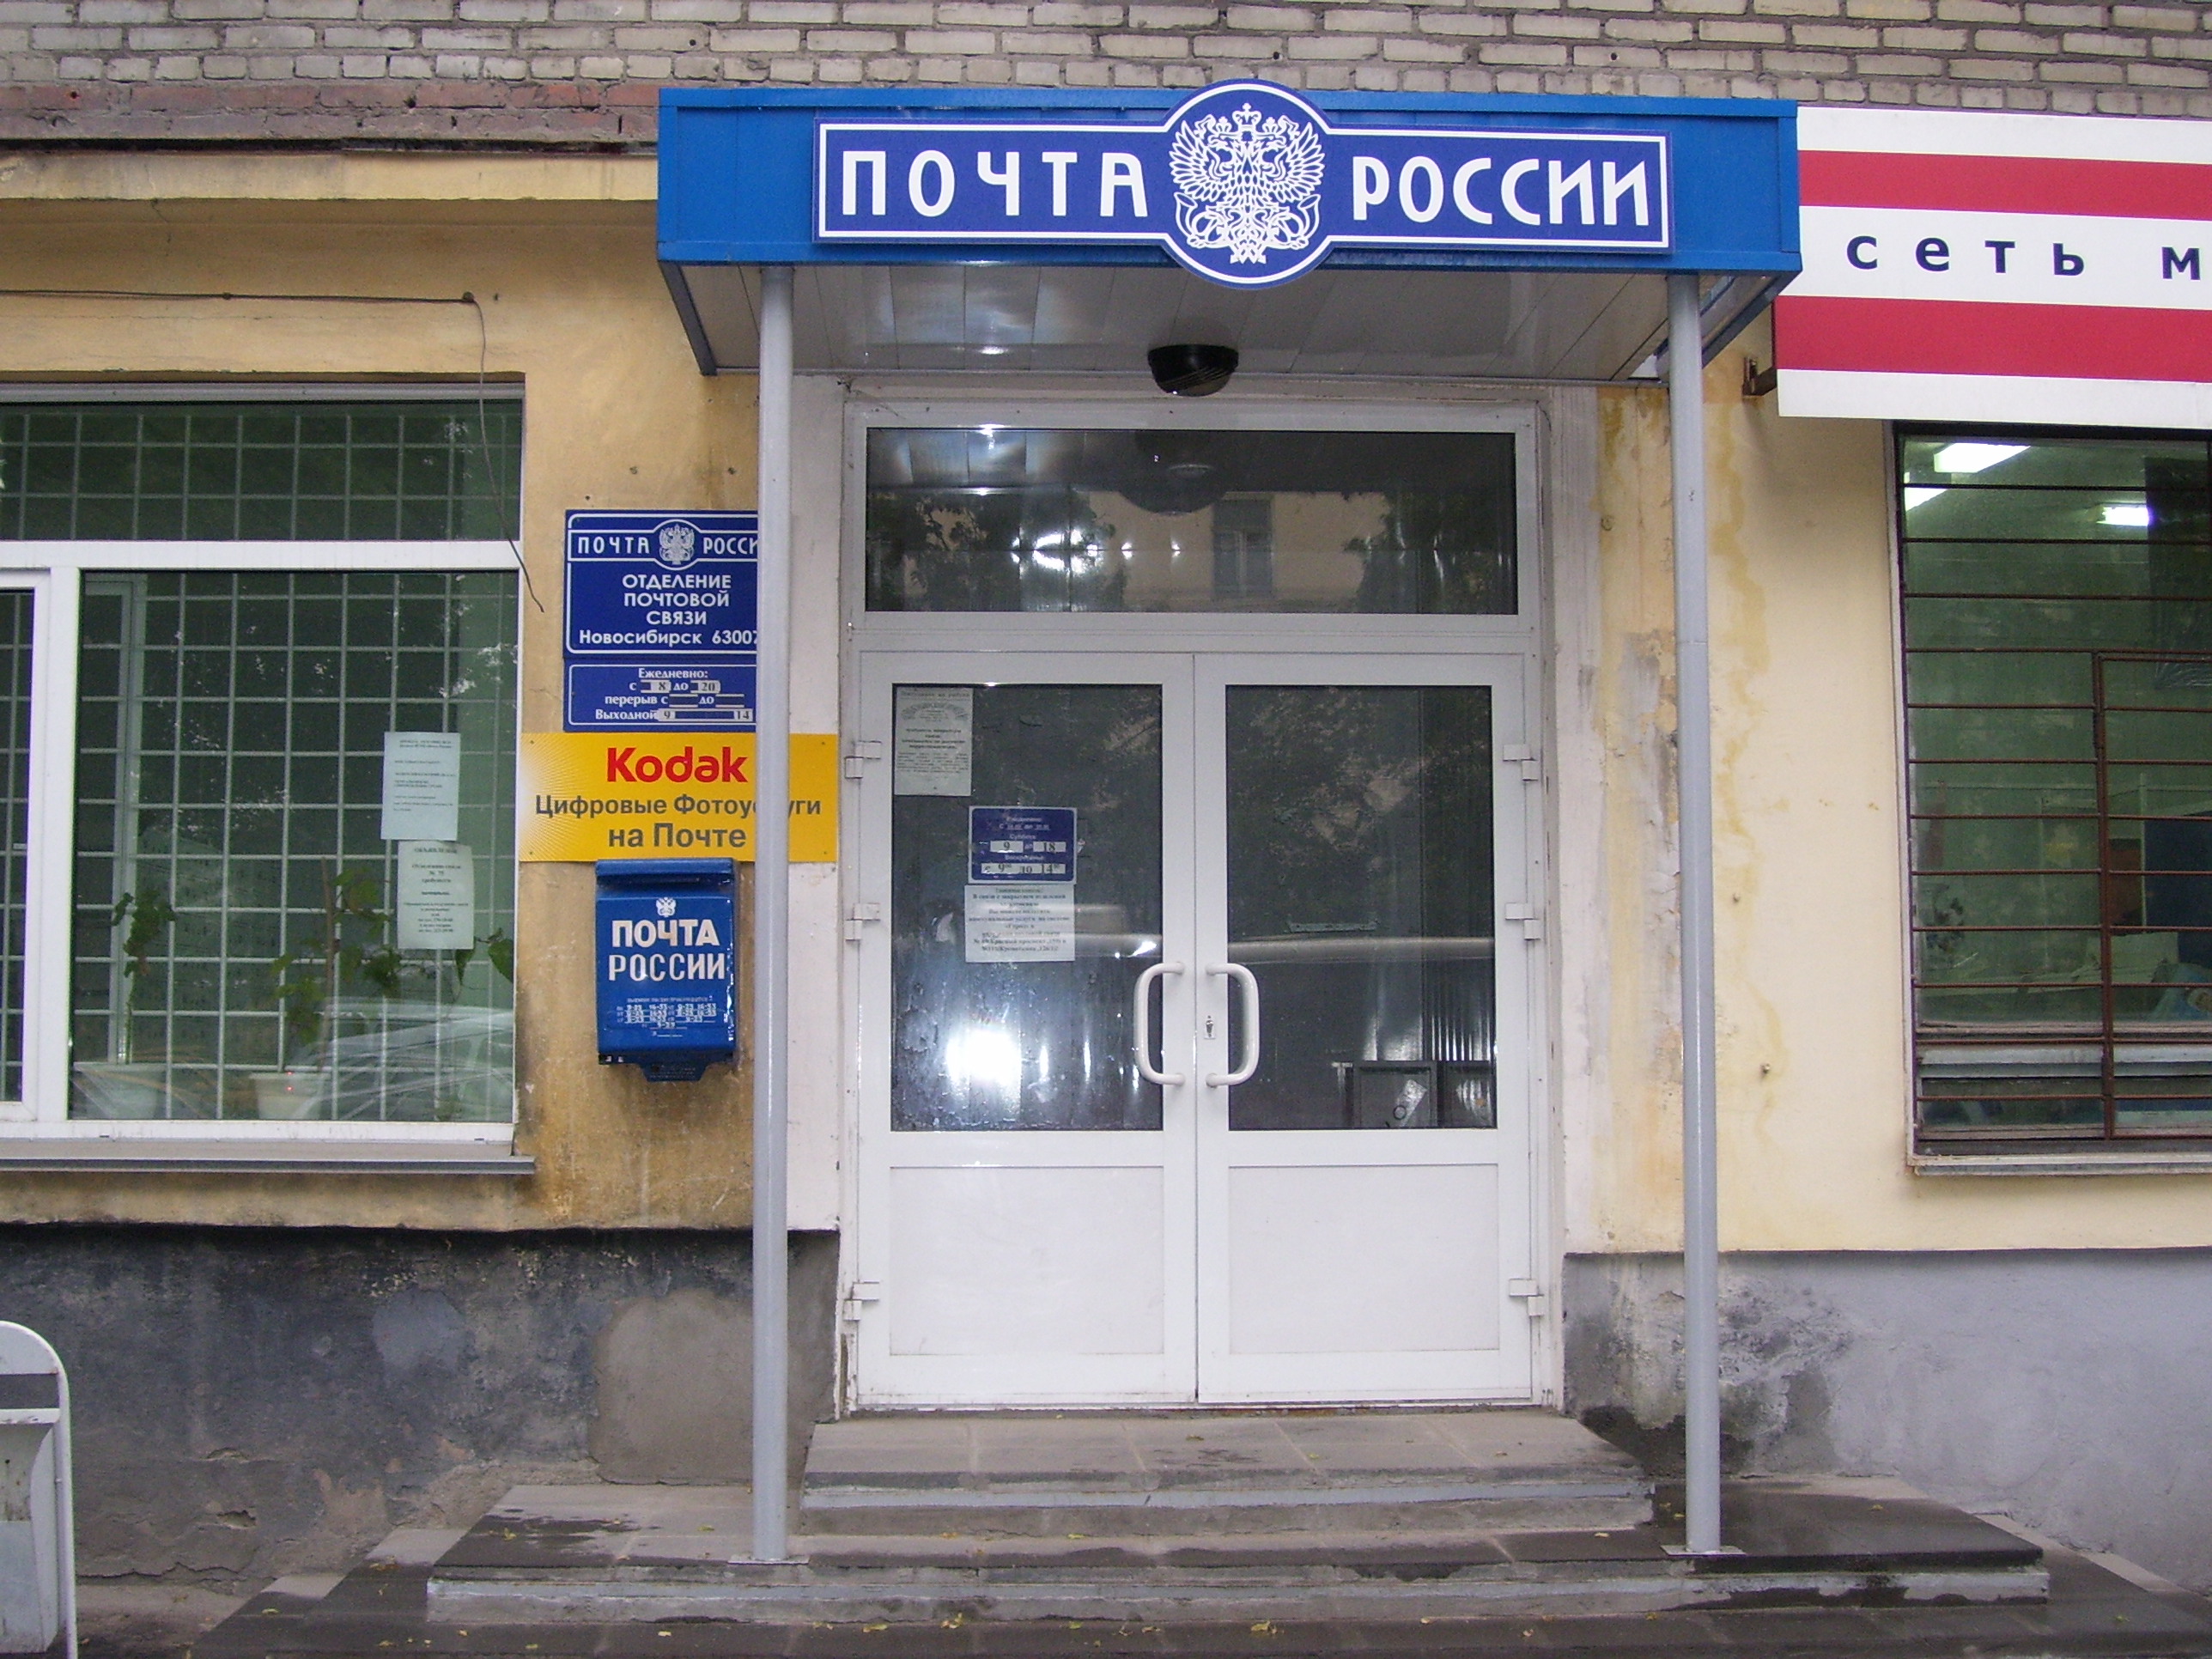 ВХОД, отделение почтовой связи 630075, Новосибирская обл., Новосибирск